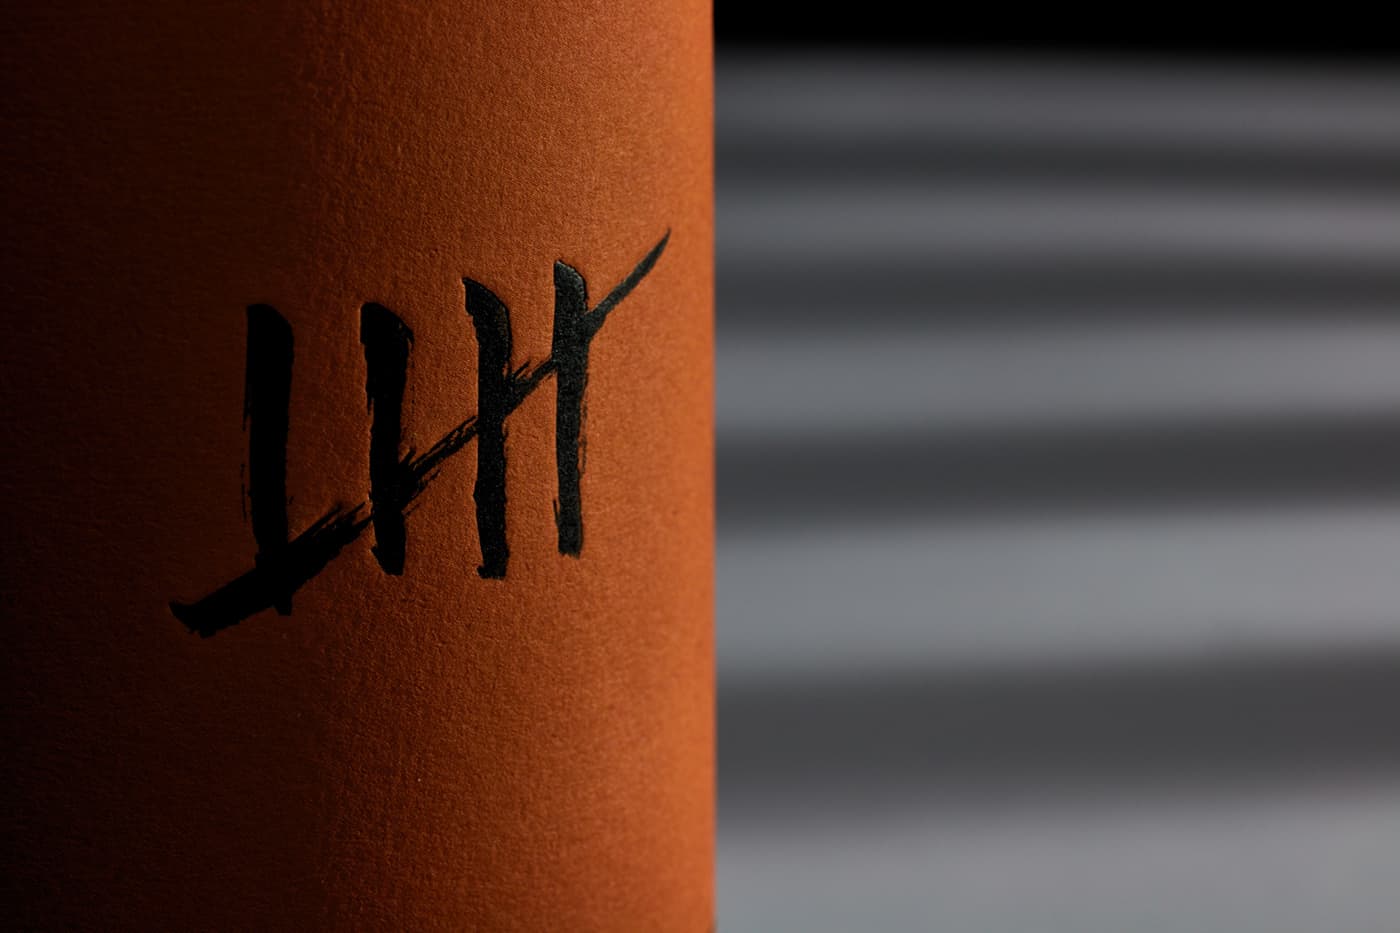 Diseño etiqueta de vino